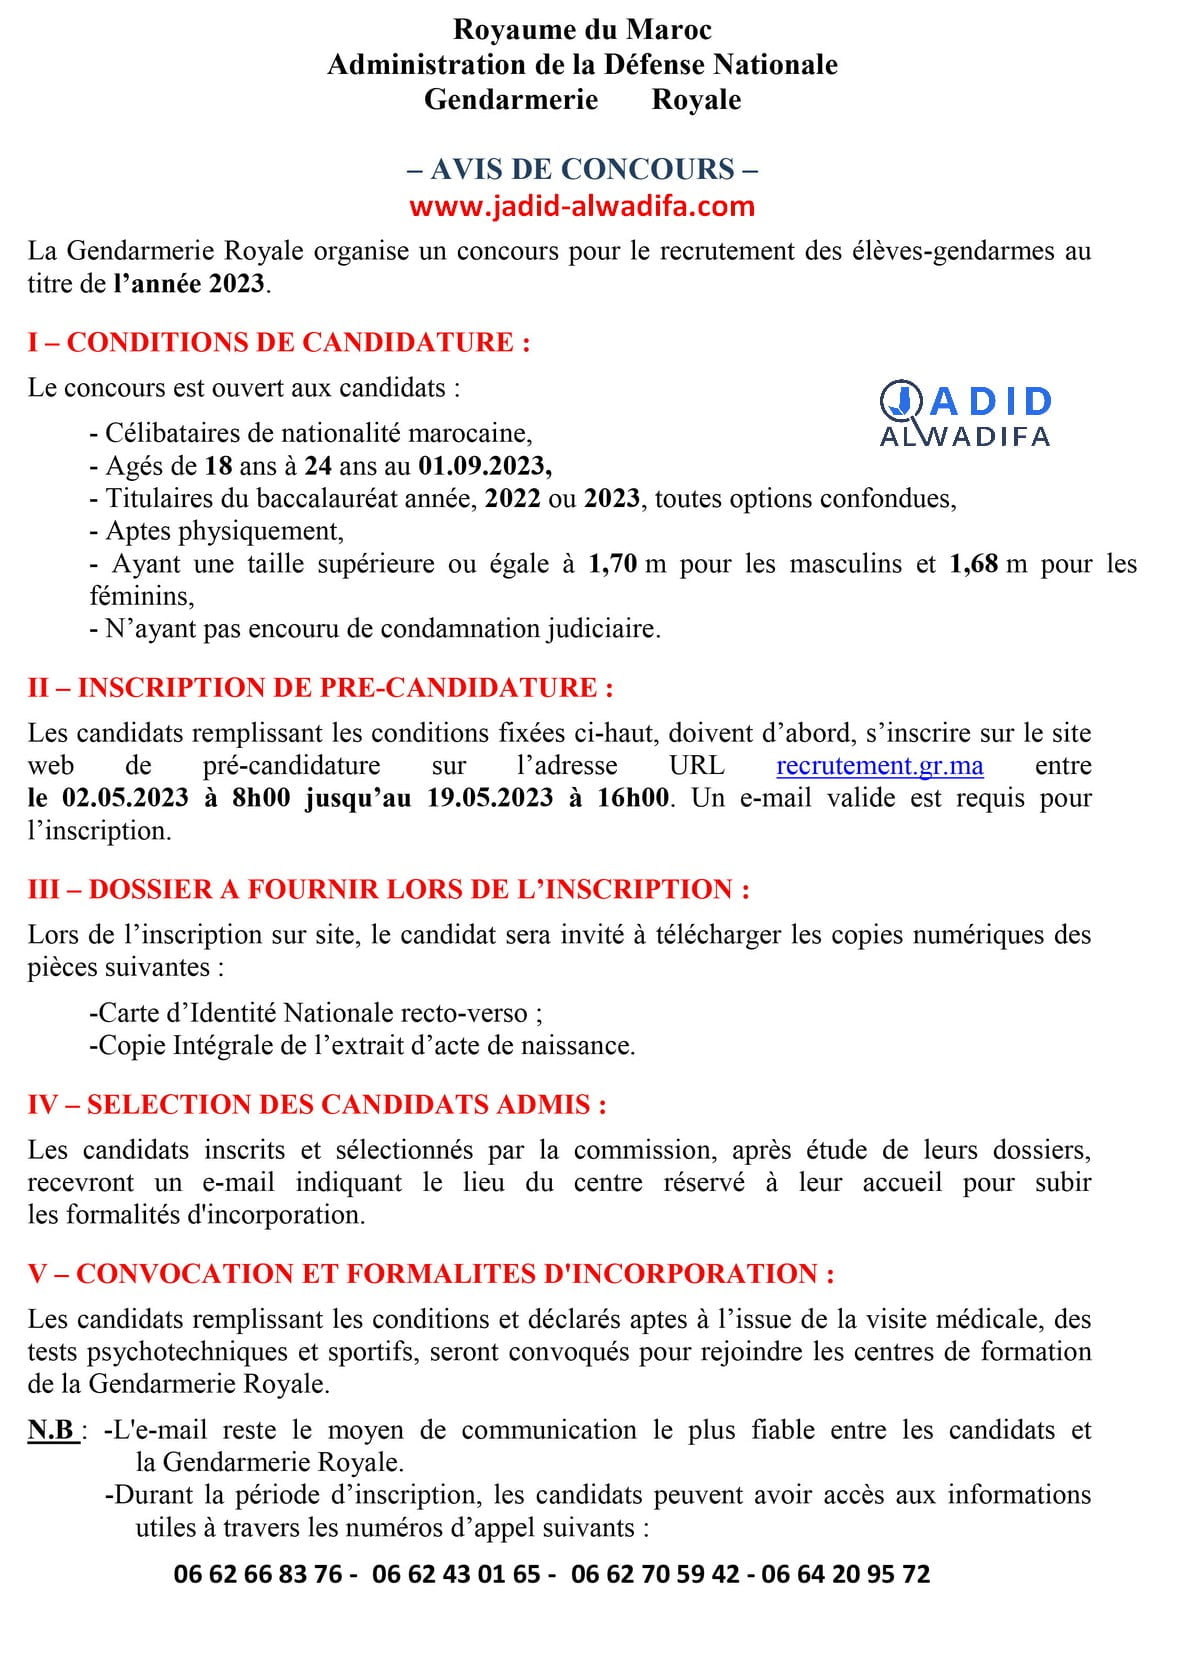 Concours de Recrutement Gendarmerie Royale 2023 Maroc